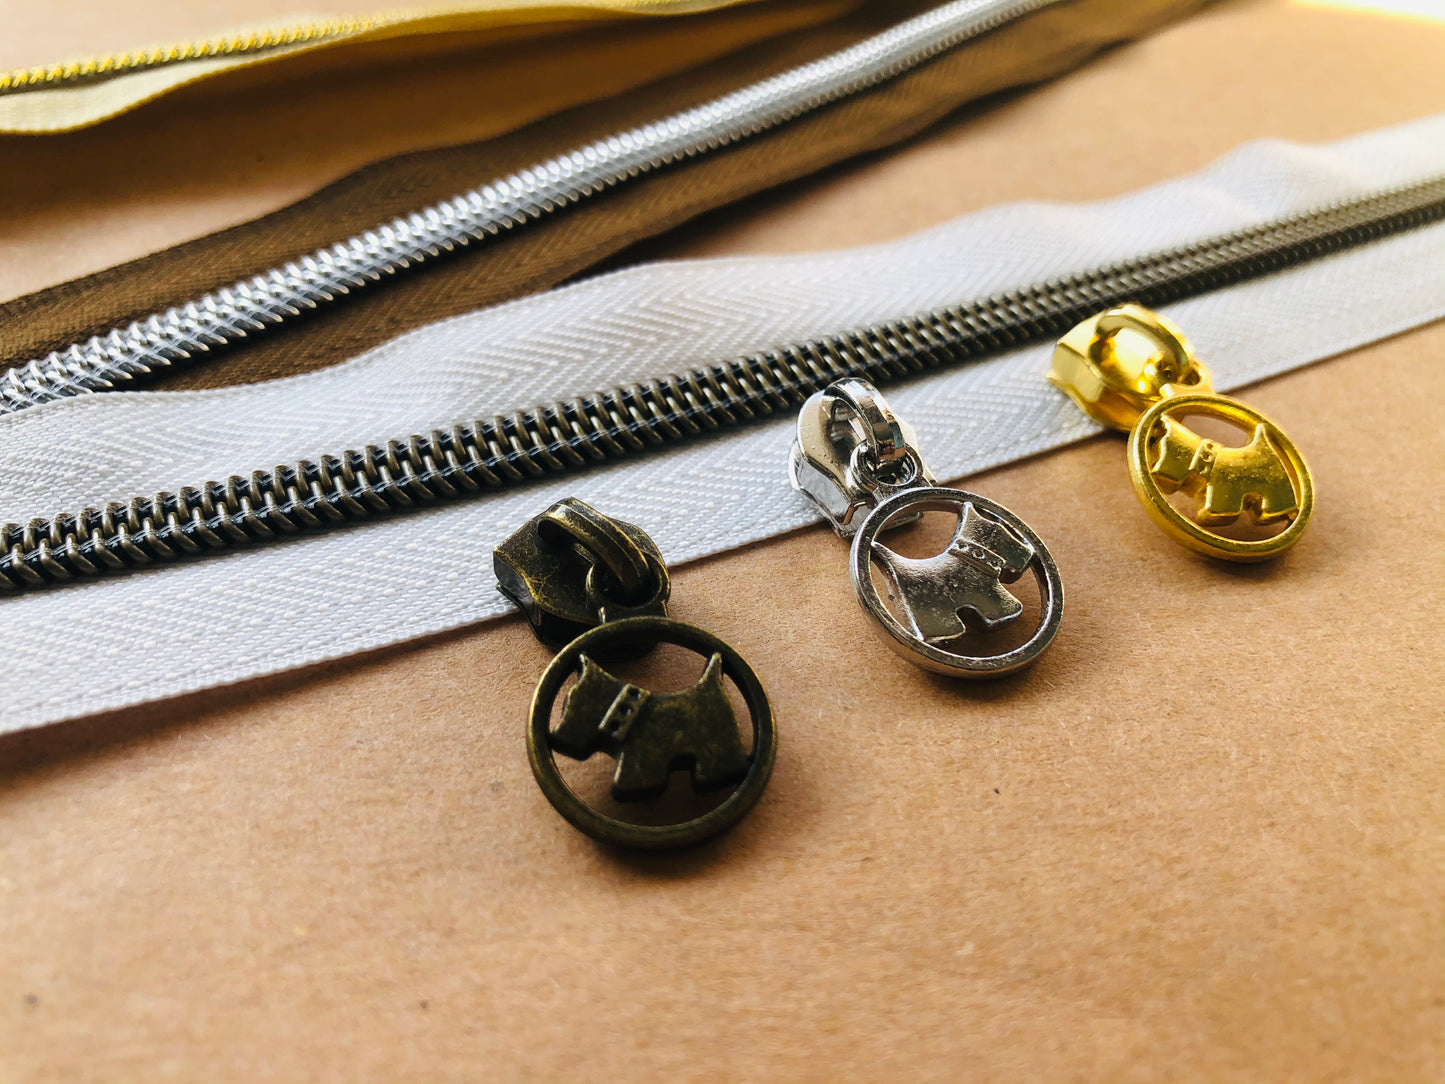 Puppy zipper pulls, Size 5 zipper pulls for nylon zipper tapes, zipper pulls in antique brass, sliver, gold, rose gold, gun metal